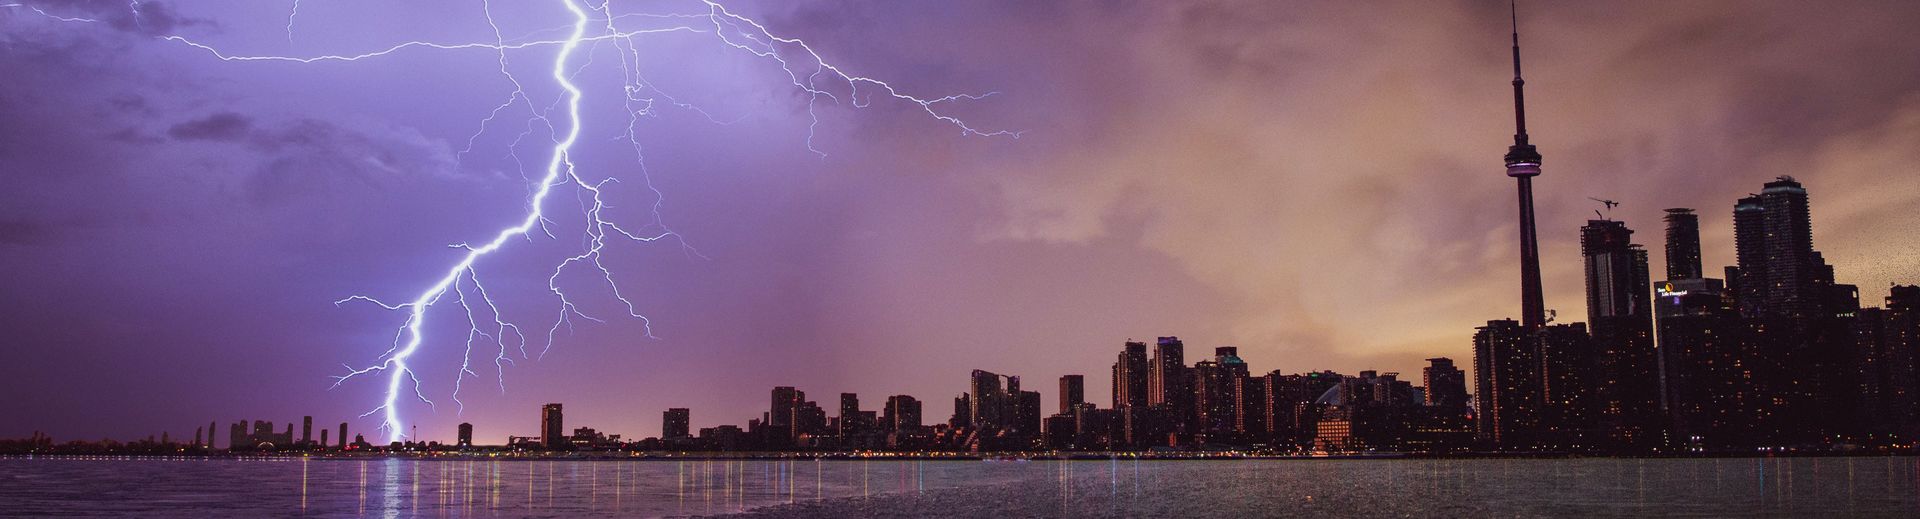 lightning strike near a city skyline